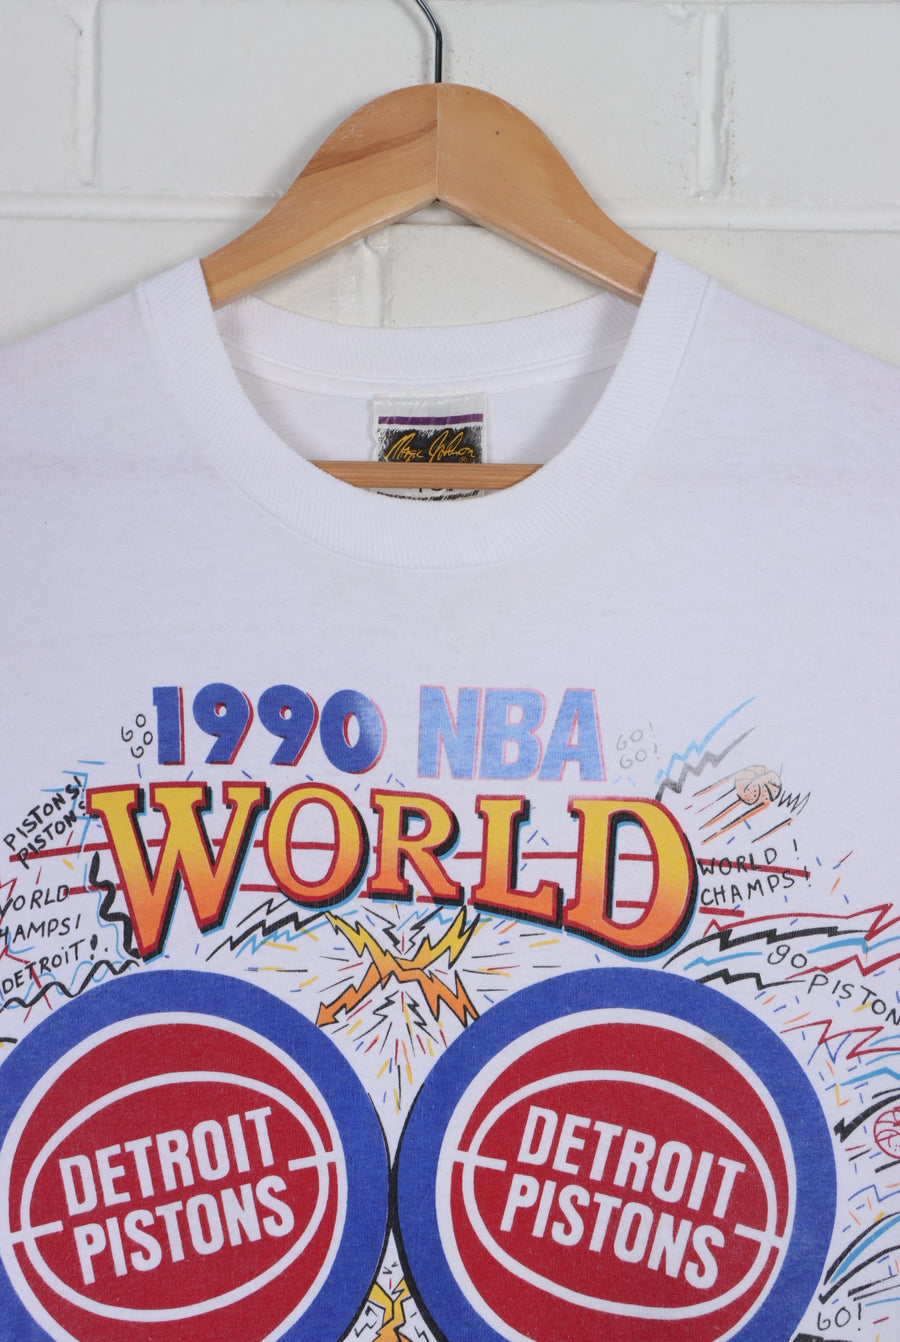 NBA Detroit Pistons 1990 World Champions Single Stitch T-Shirt USA Made (L)